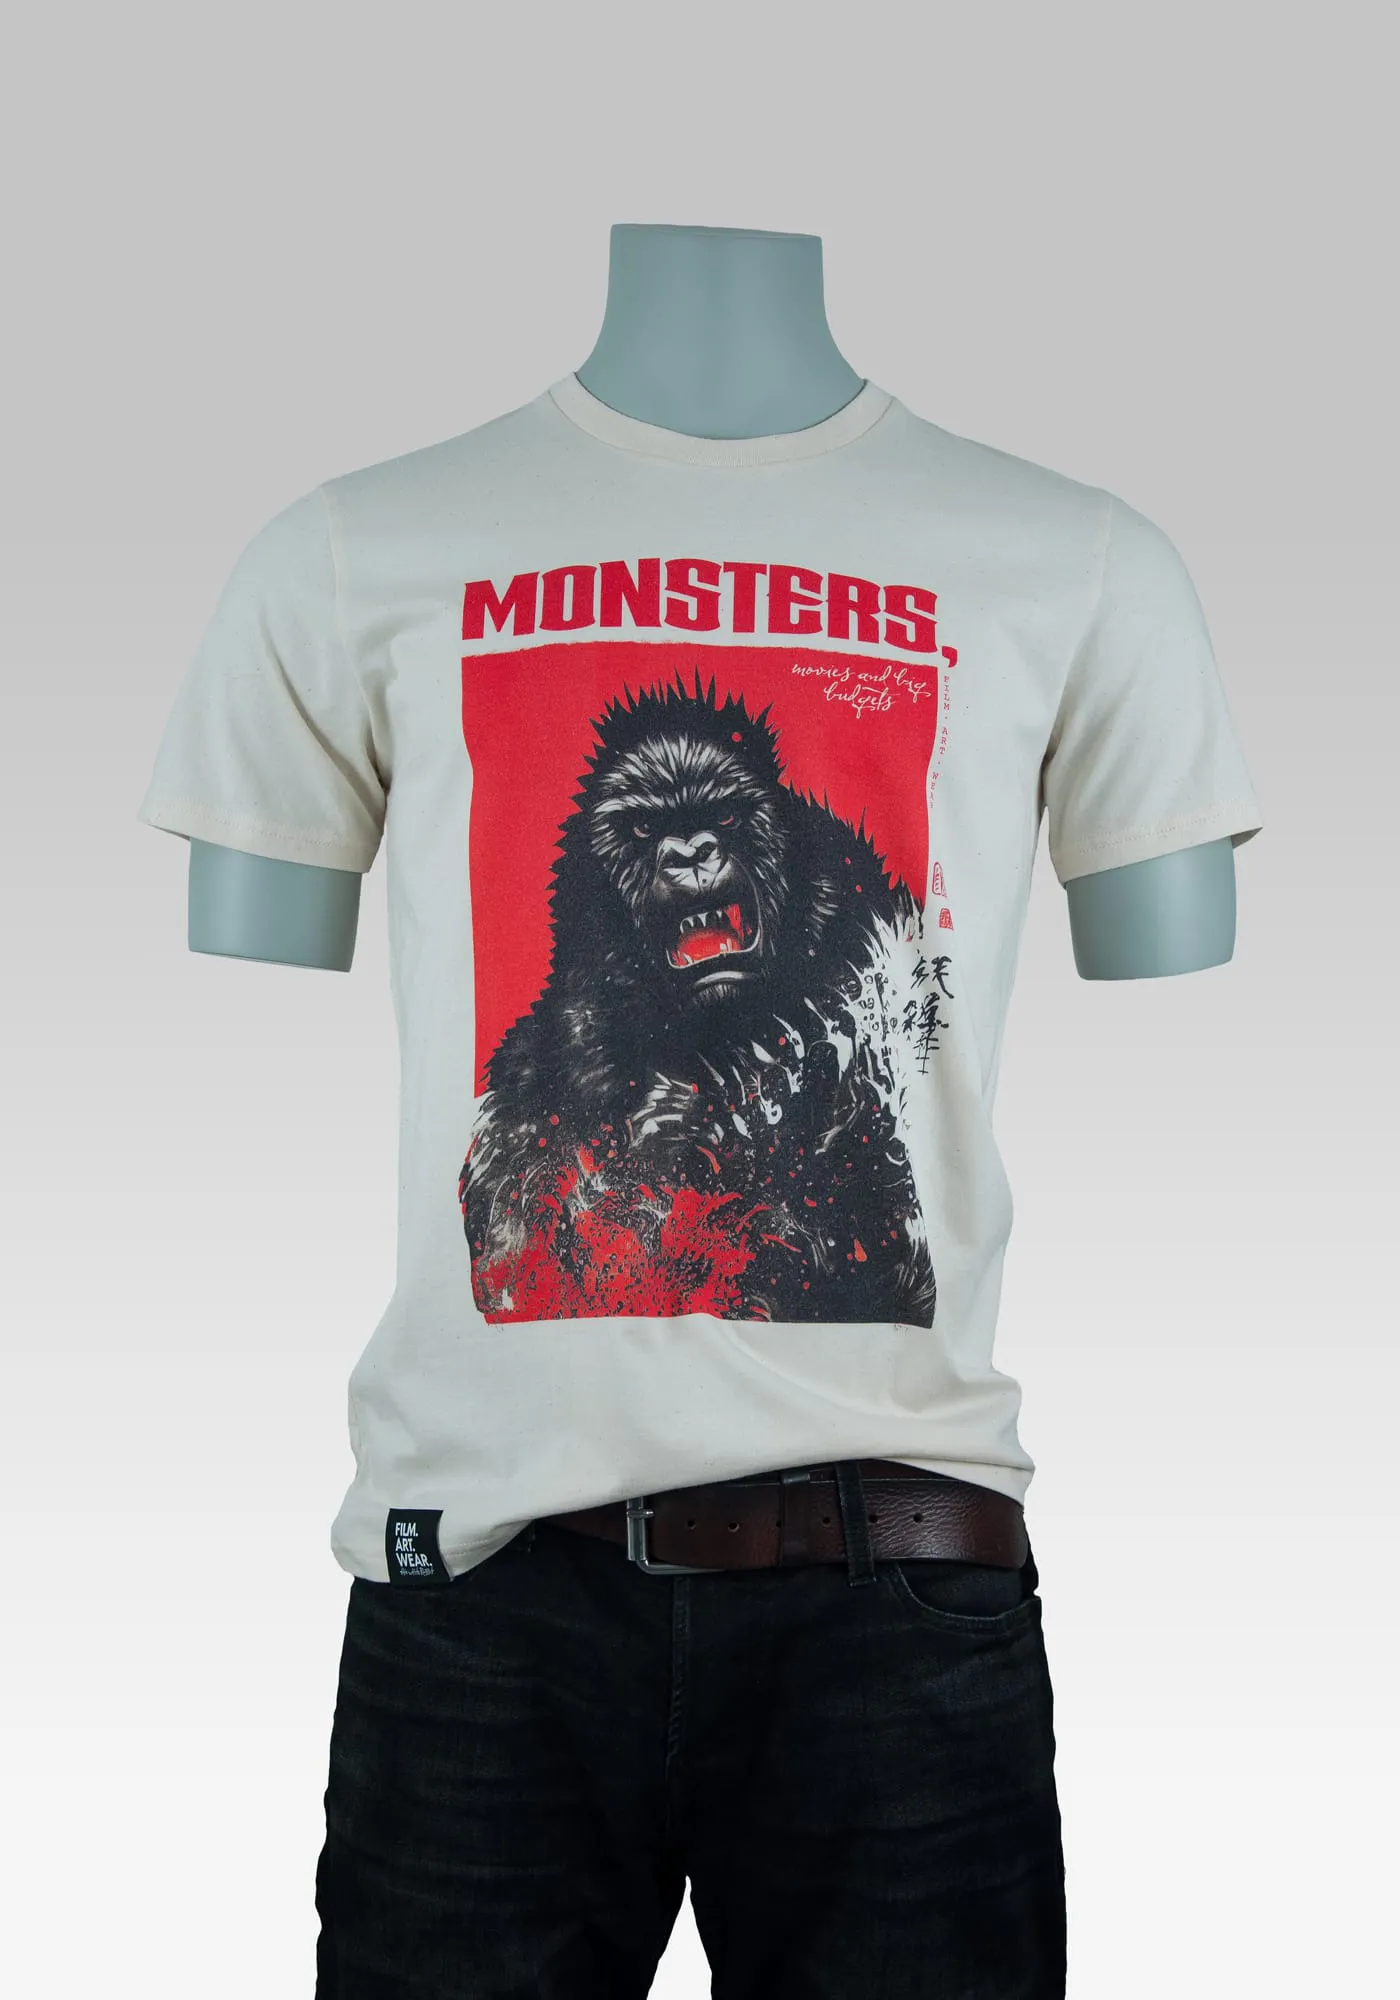 Monster T-Shirt mit einem Gorilla und dem Logo Monsters, Movies and big budgets